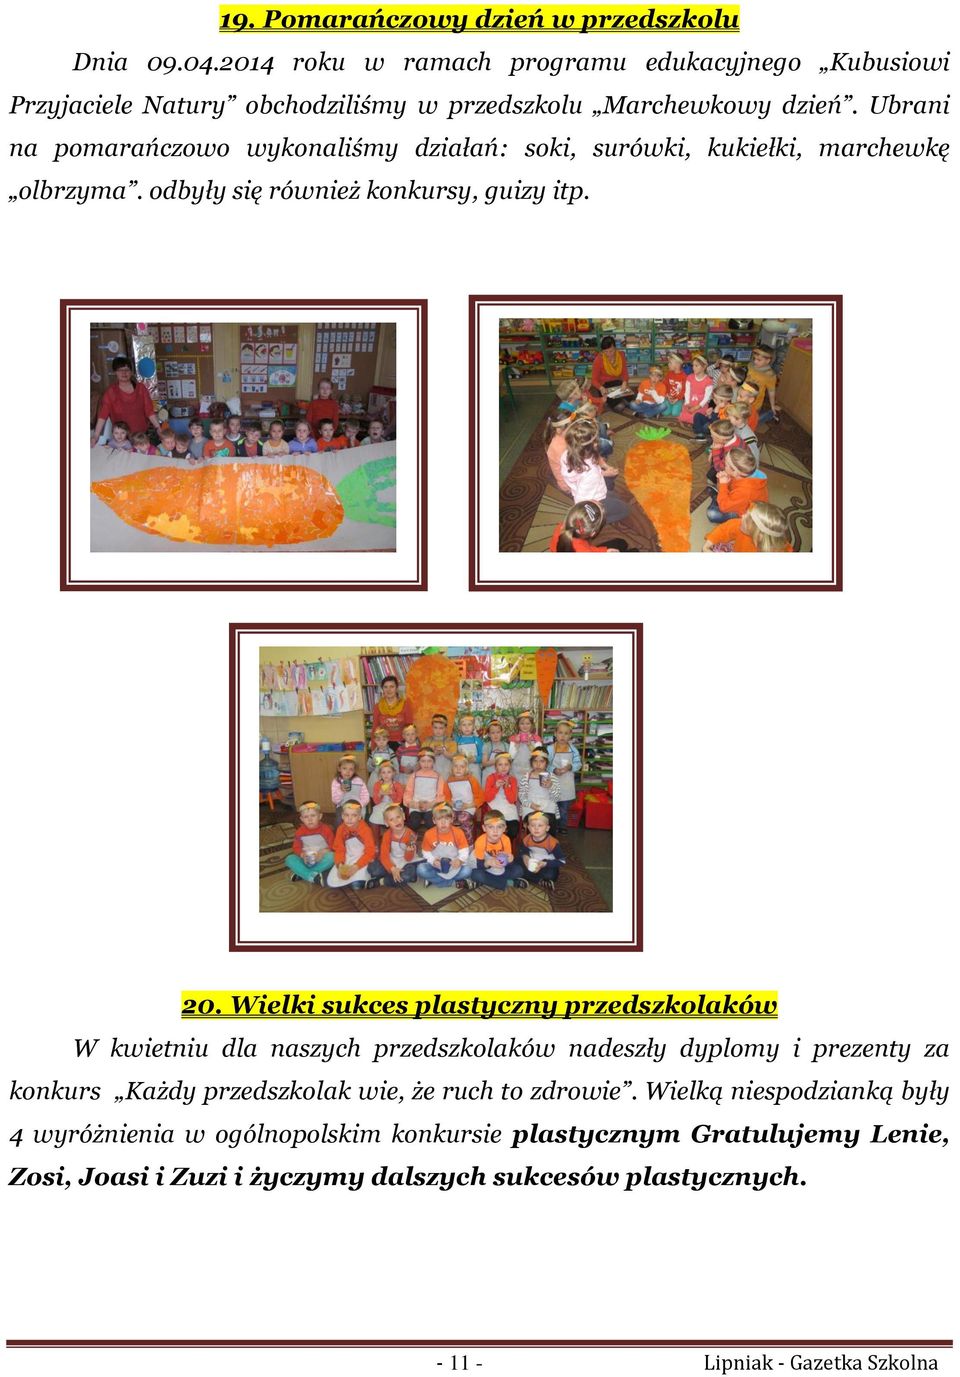 Ubrani na pomarańczowo wykonaliśmy działań: soki, surówki, kukiełki, marchewkę olbrzyma. odbyły się również konkursy, guizy itp. 20.